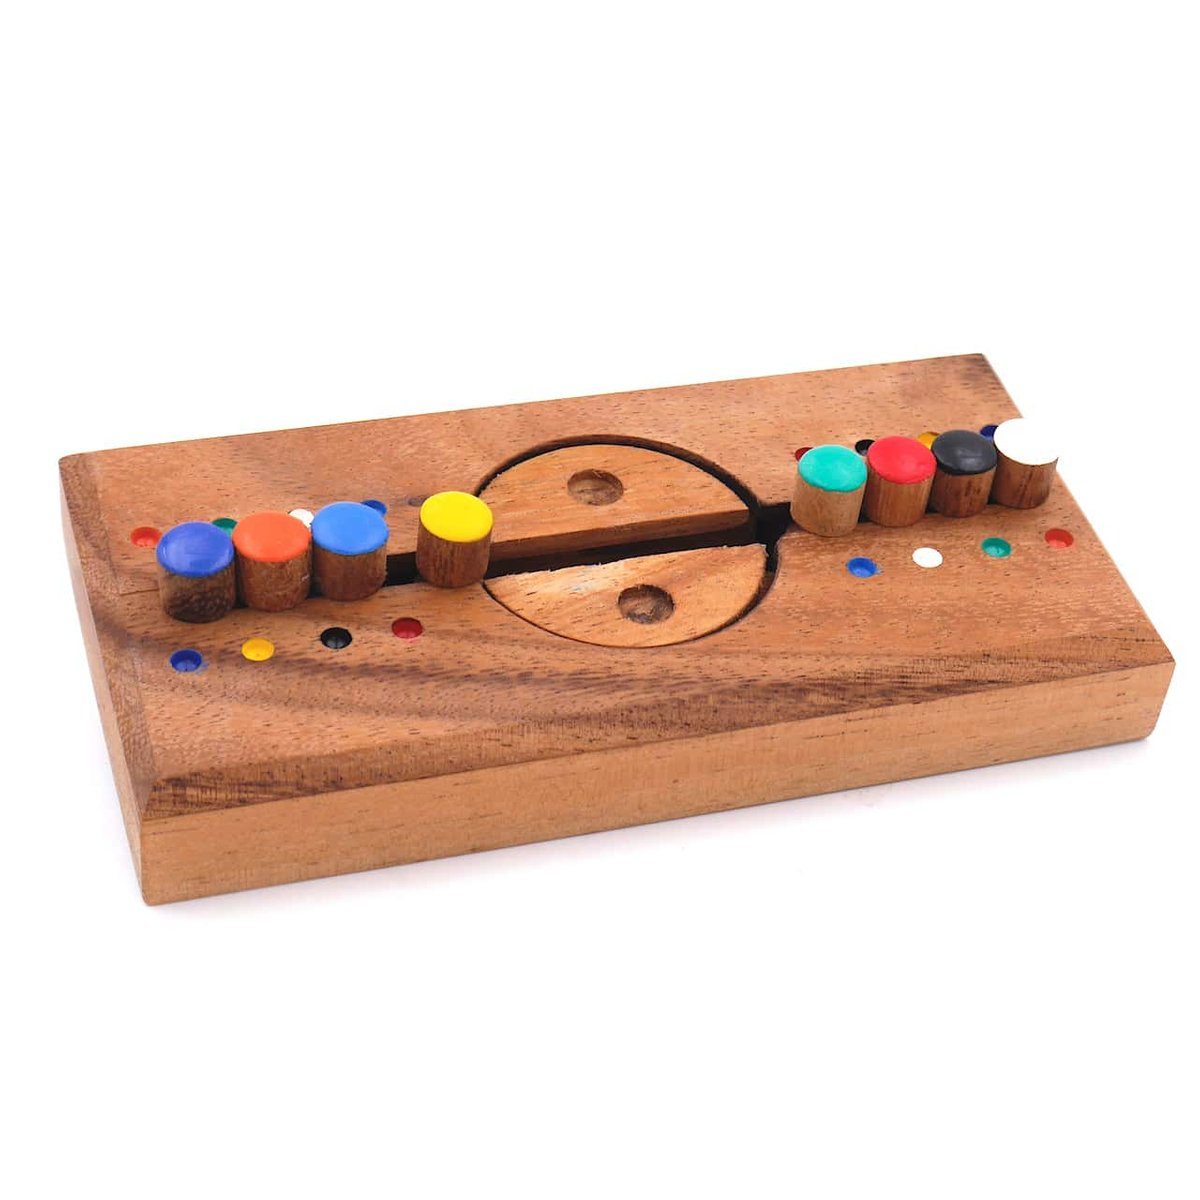 ROMBOL Denkspiele Spiel, Knobelspiel Farbspiel Sicherheitscode - tolles Knobelspiel für jung und alt, Holzspiel